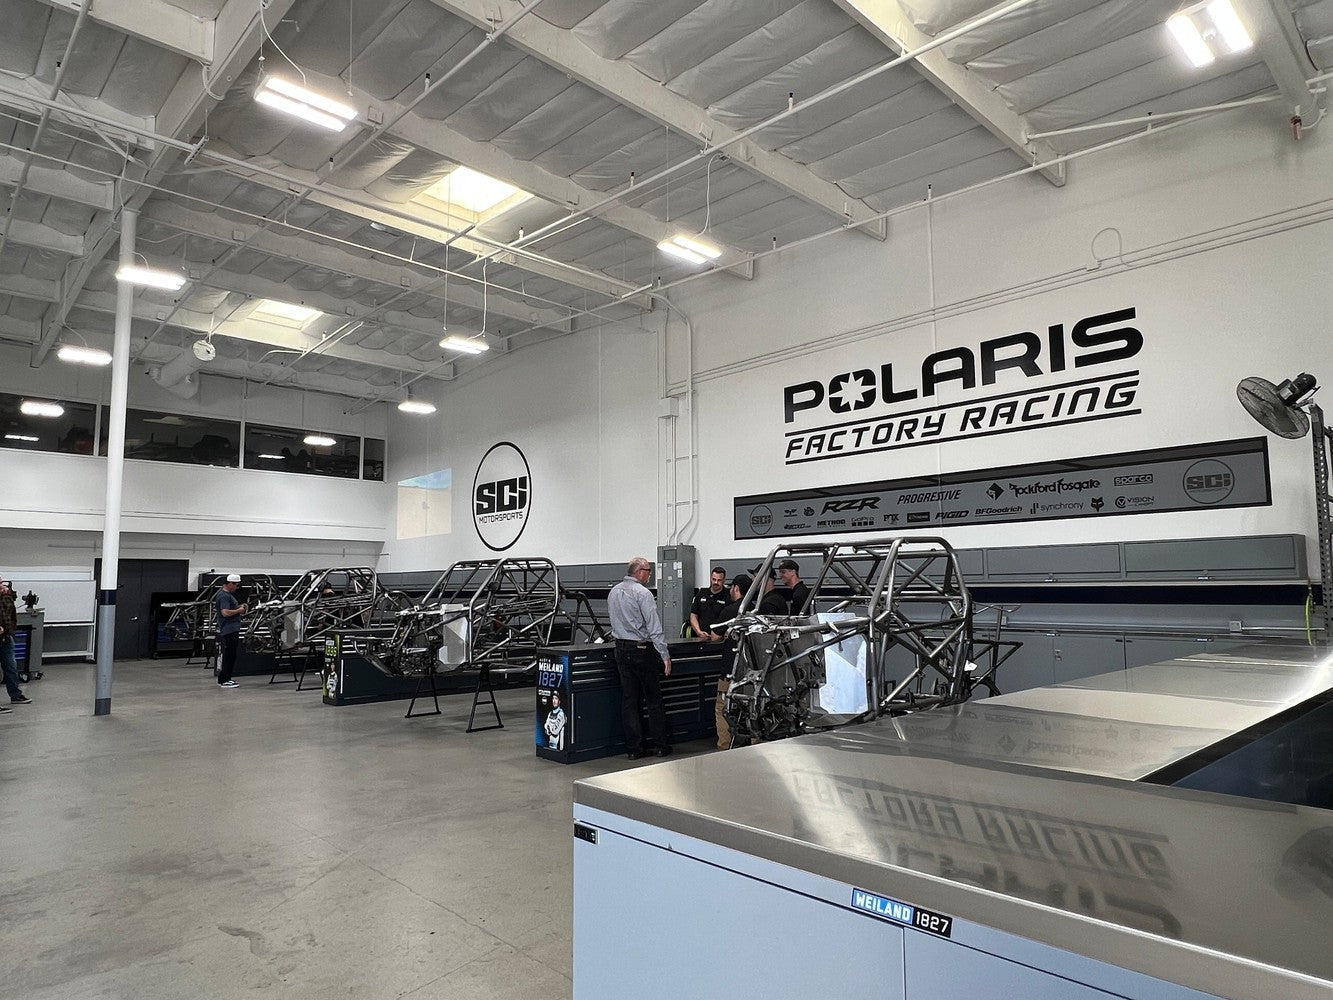 BoxoUSA Partnership with Polaris Factory Racing Team (SCI)